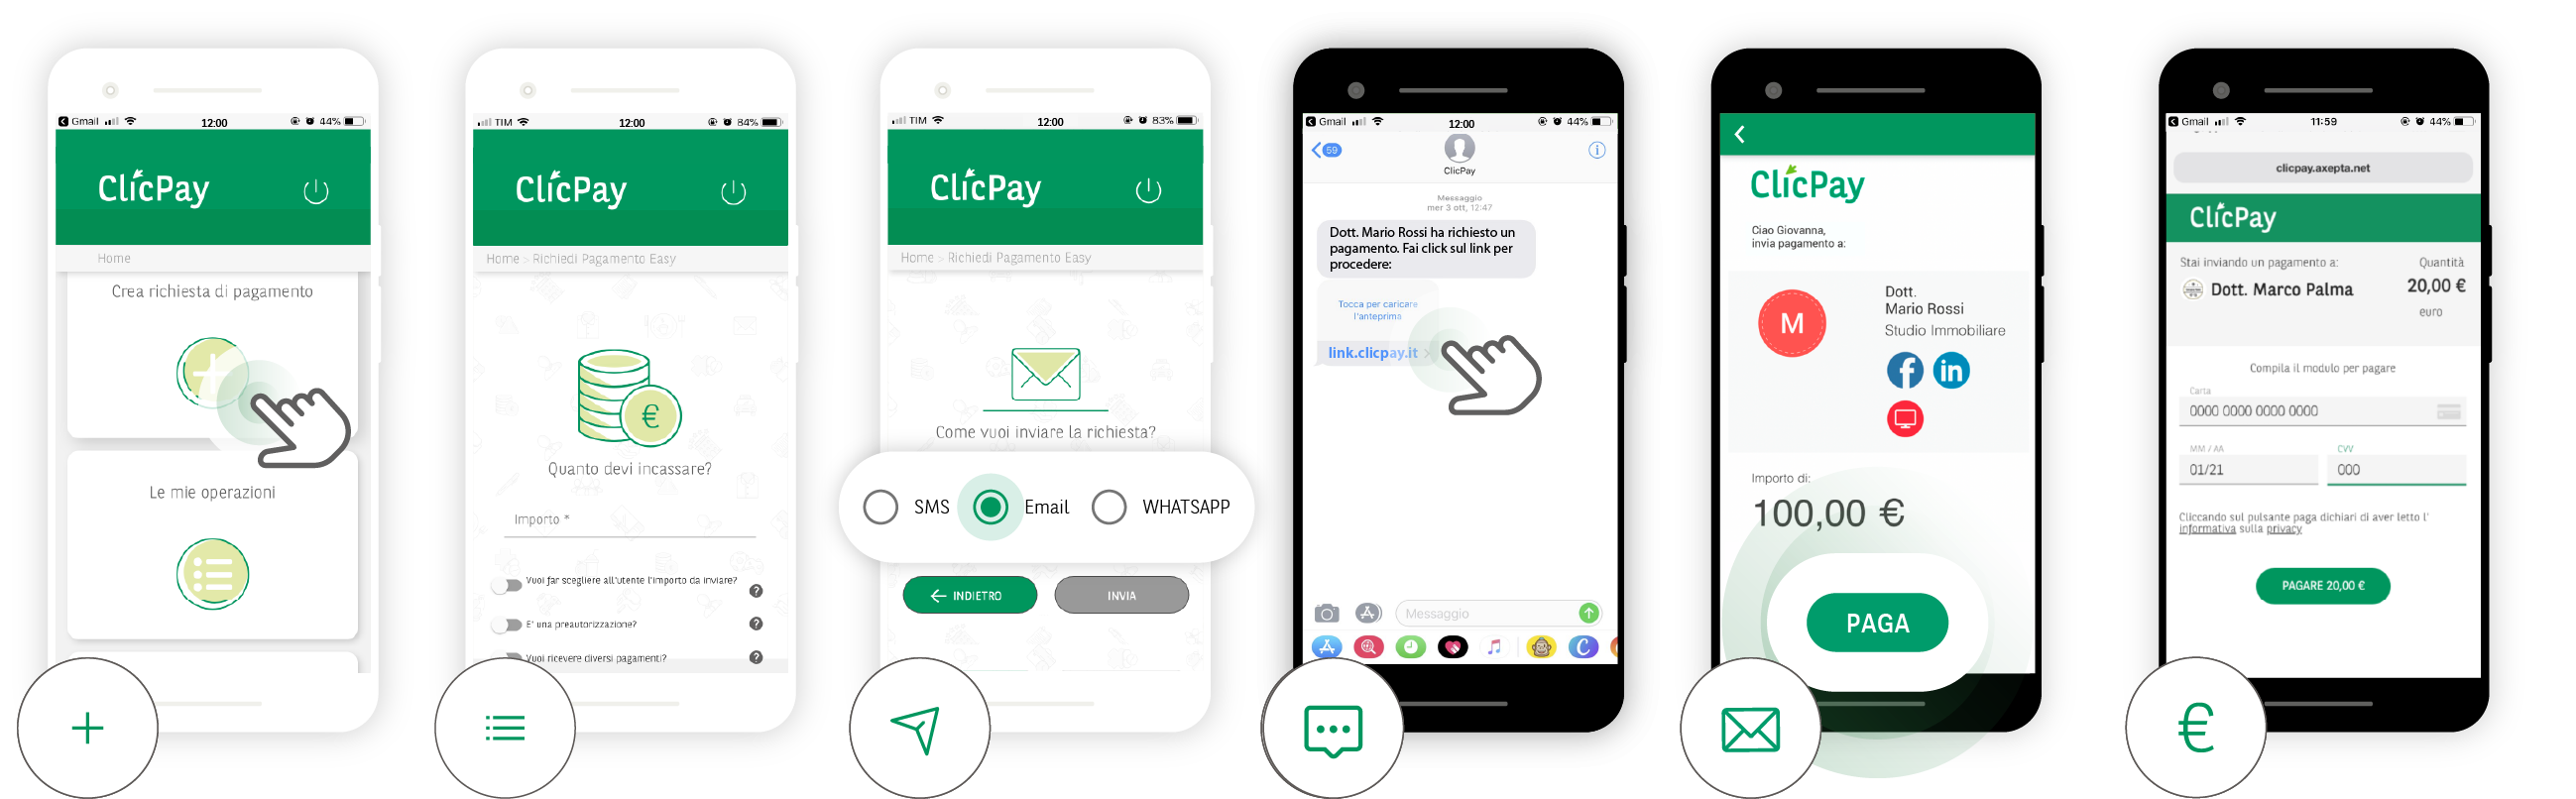 ClicPay: invia richieste di pagamento ai clienti